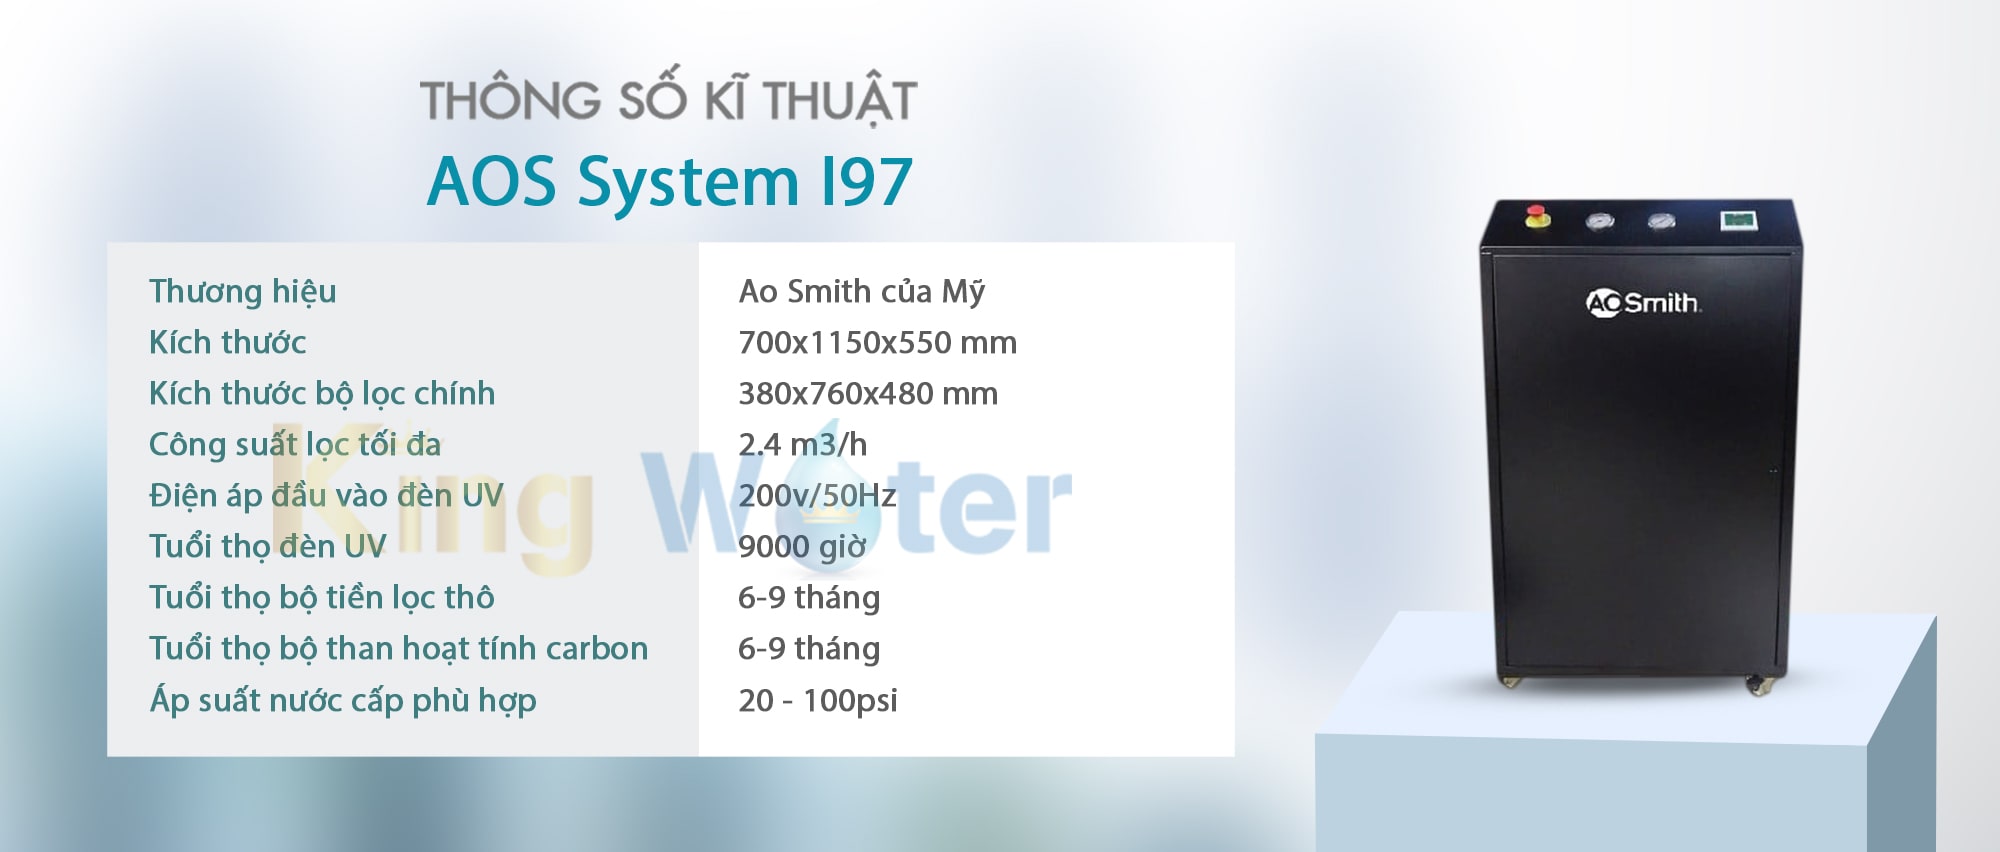 Thông số kĩ thuật máy lọc nước Ao Smith System i97 từ Mỹ